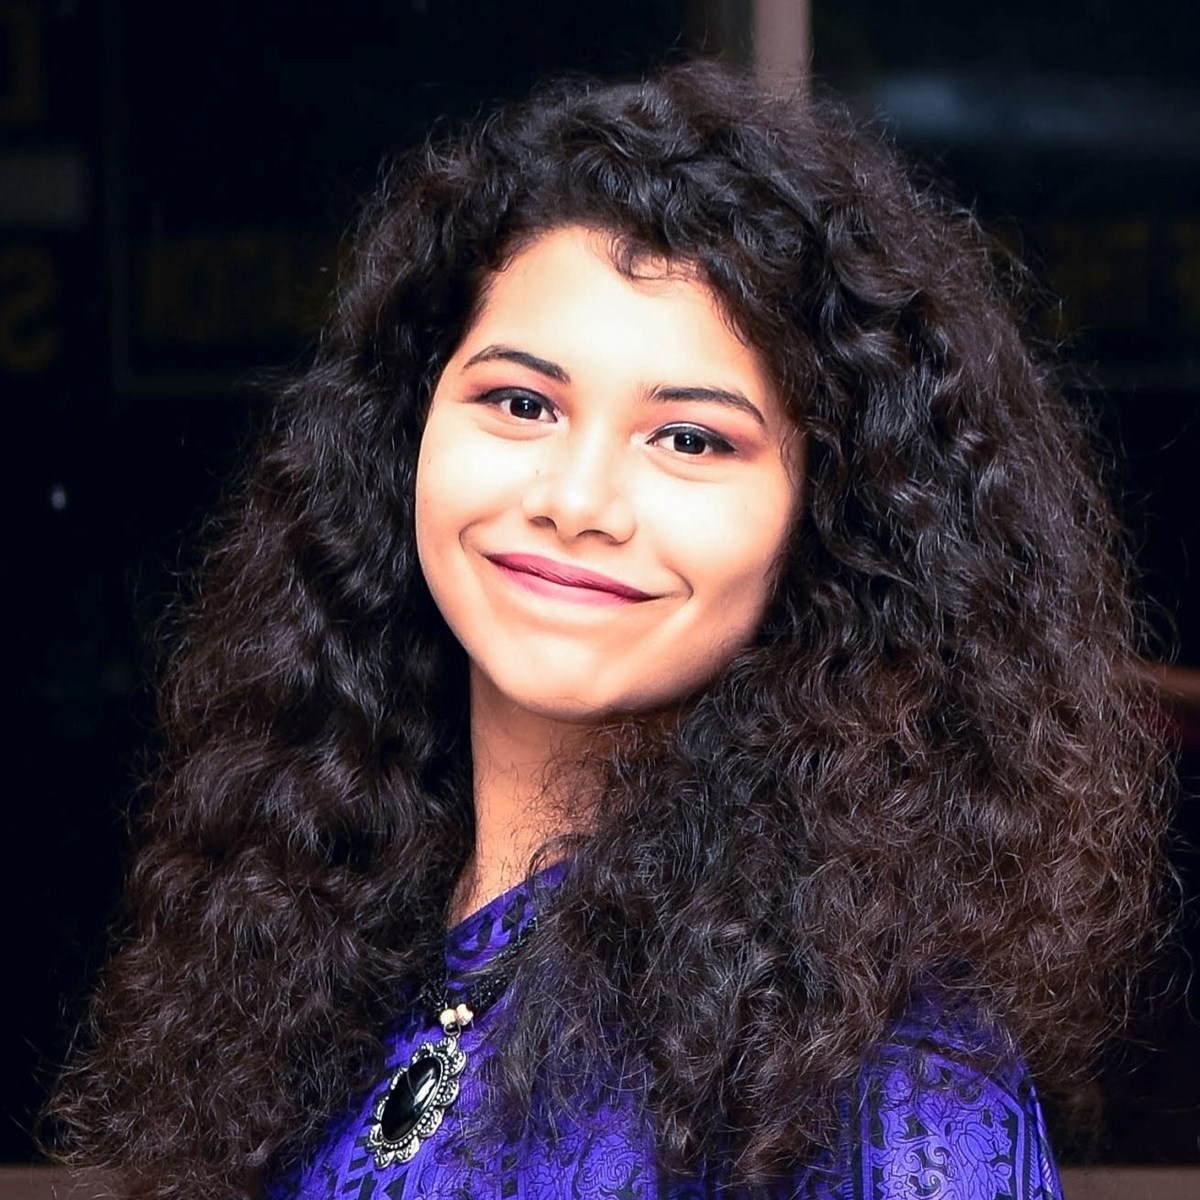 Ridhita, UML student, headshot picture in purple shirt